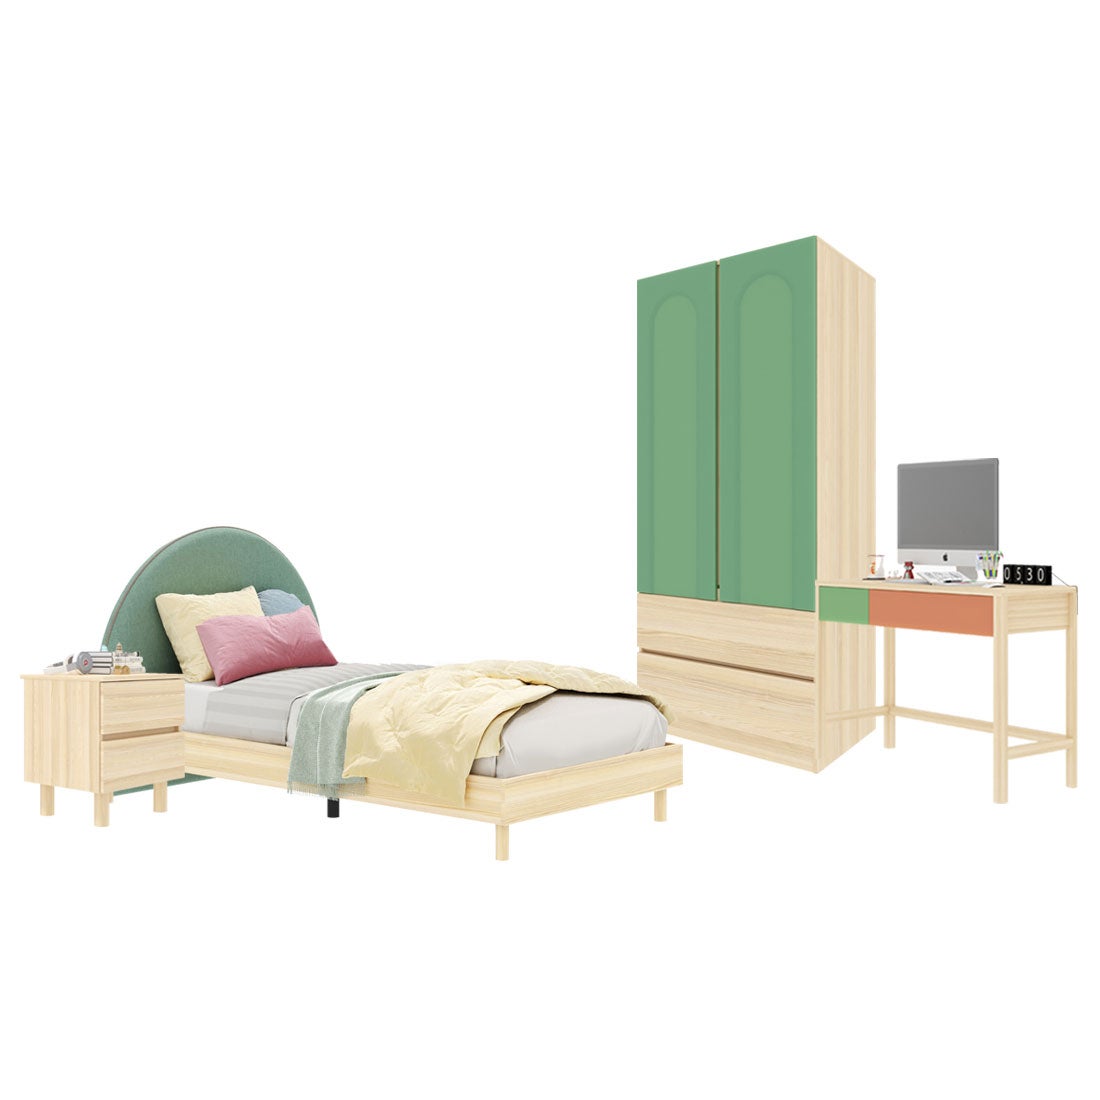 ชุดห้องนอน ขนาด 3.5 ฟุต-เบาะเขียว รุ่น Bingsoo & ตู้เสื้อผ้าลิ้นชัก 90 ซม. พร้อมตู้ข้างเตียง สีเขียว01